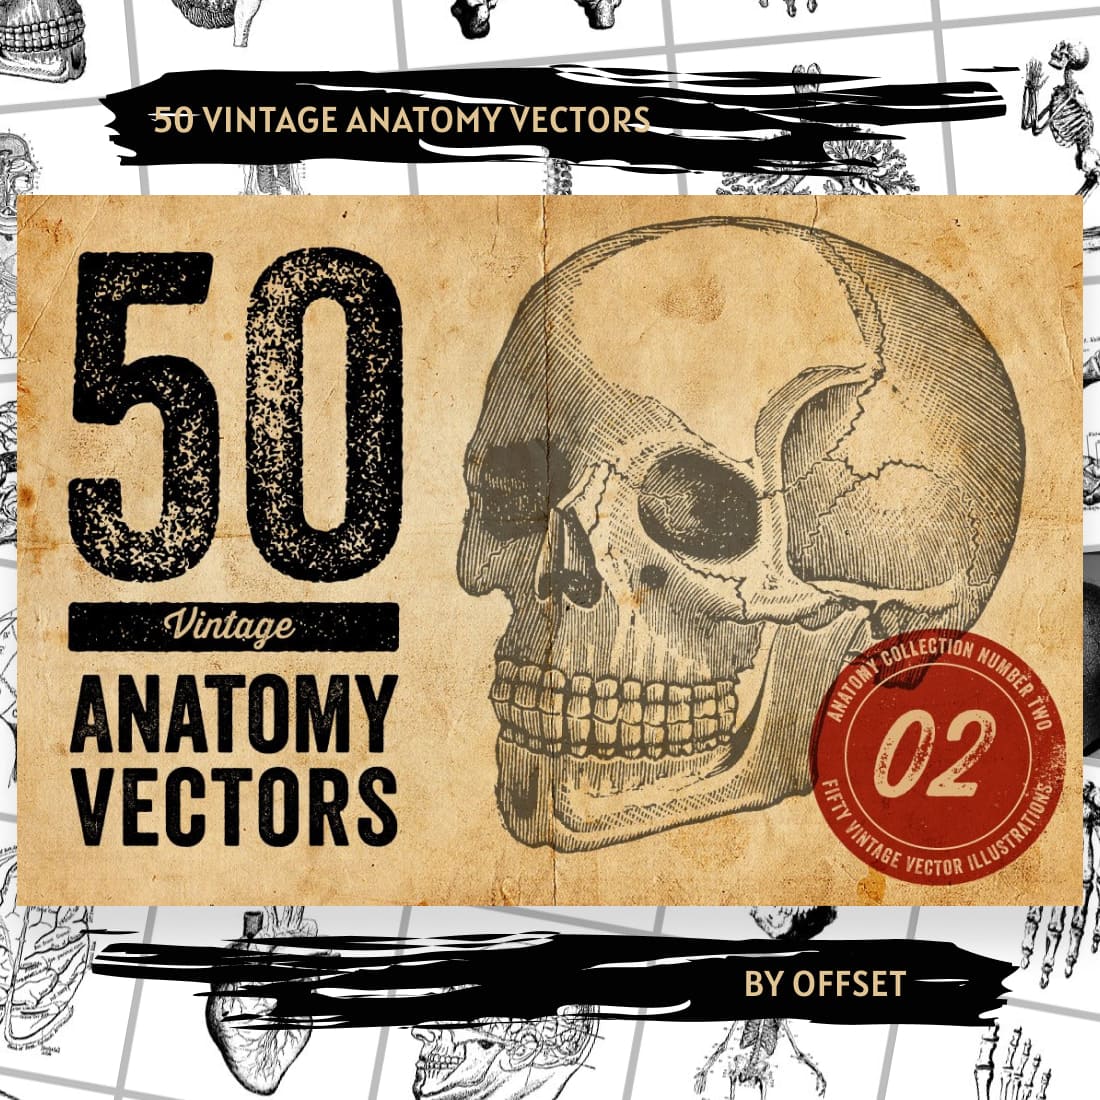 50 Vintage Anatomy Vectors main cover.